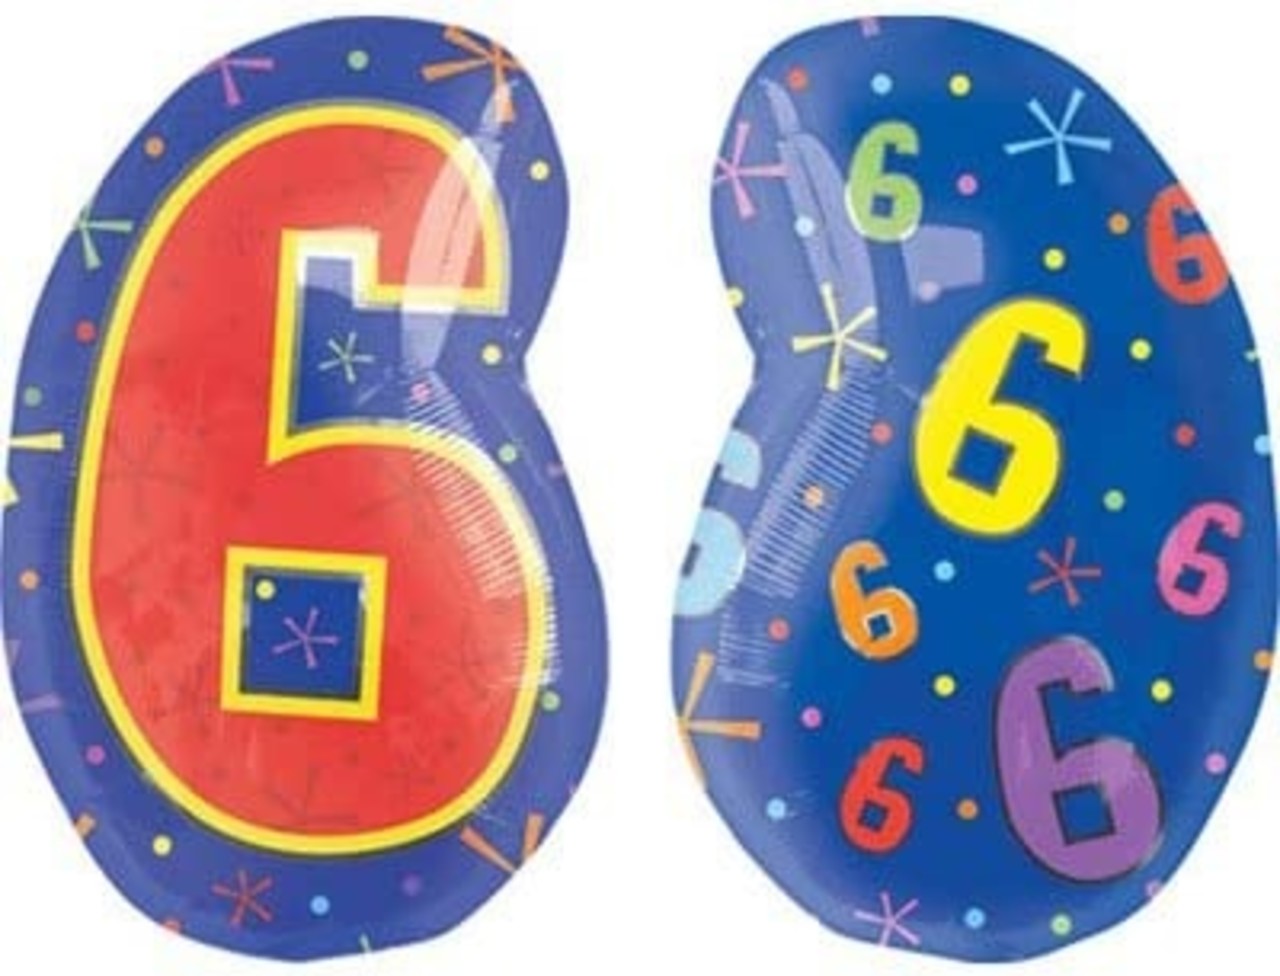 Helium ballon cijfer 3 Regenboog, Versiering verjaardag 3 jaar, Tuf-Tuf